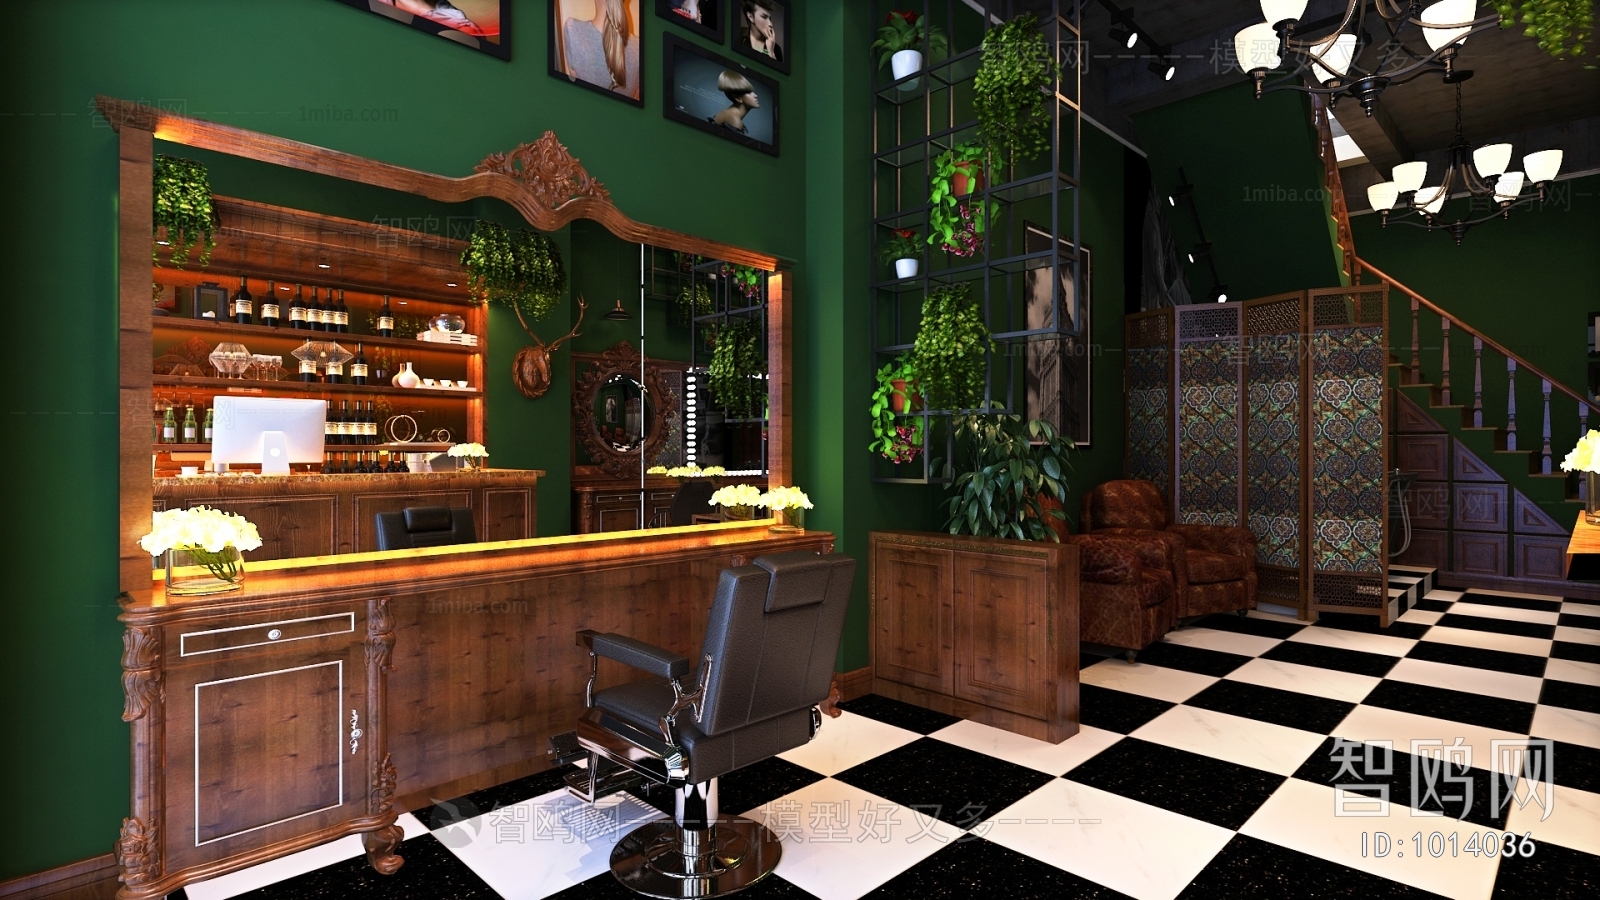 Industrial Style Barbershop